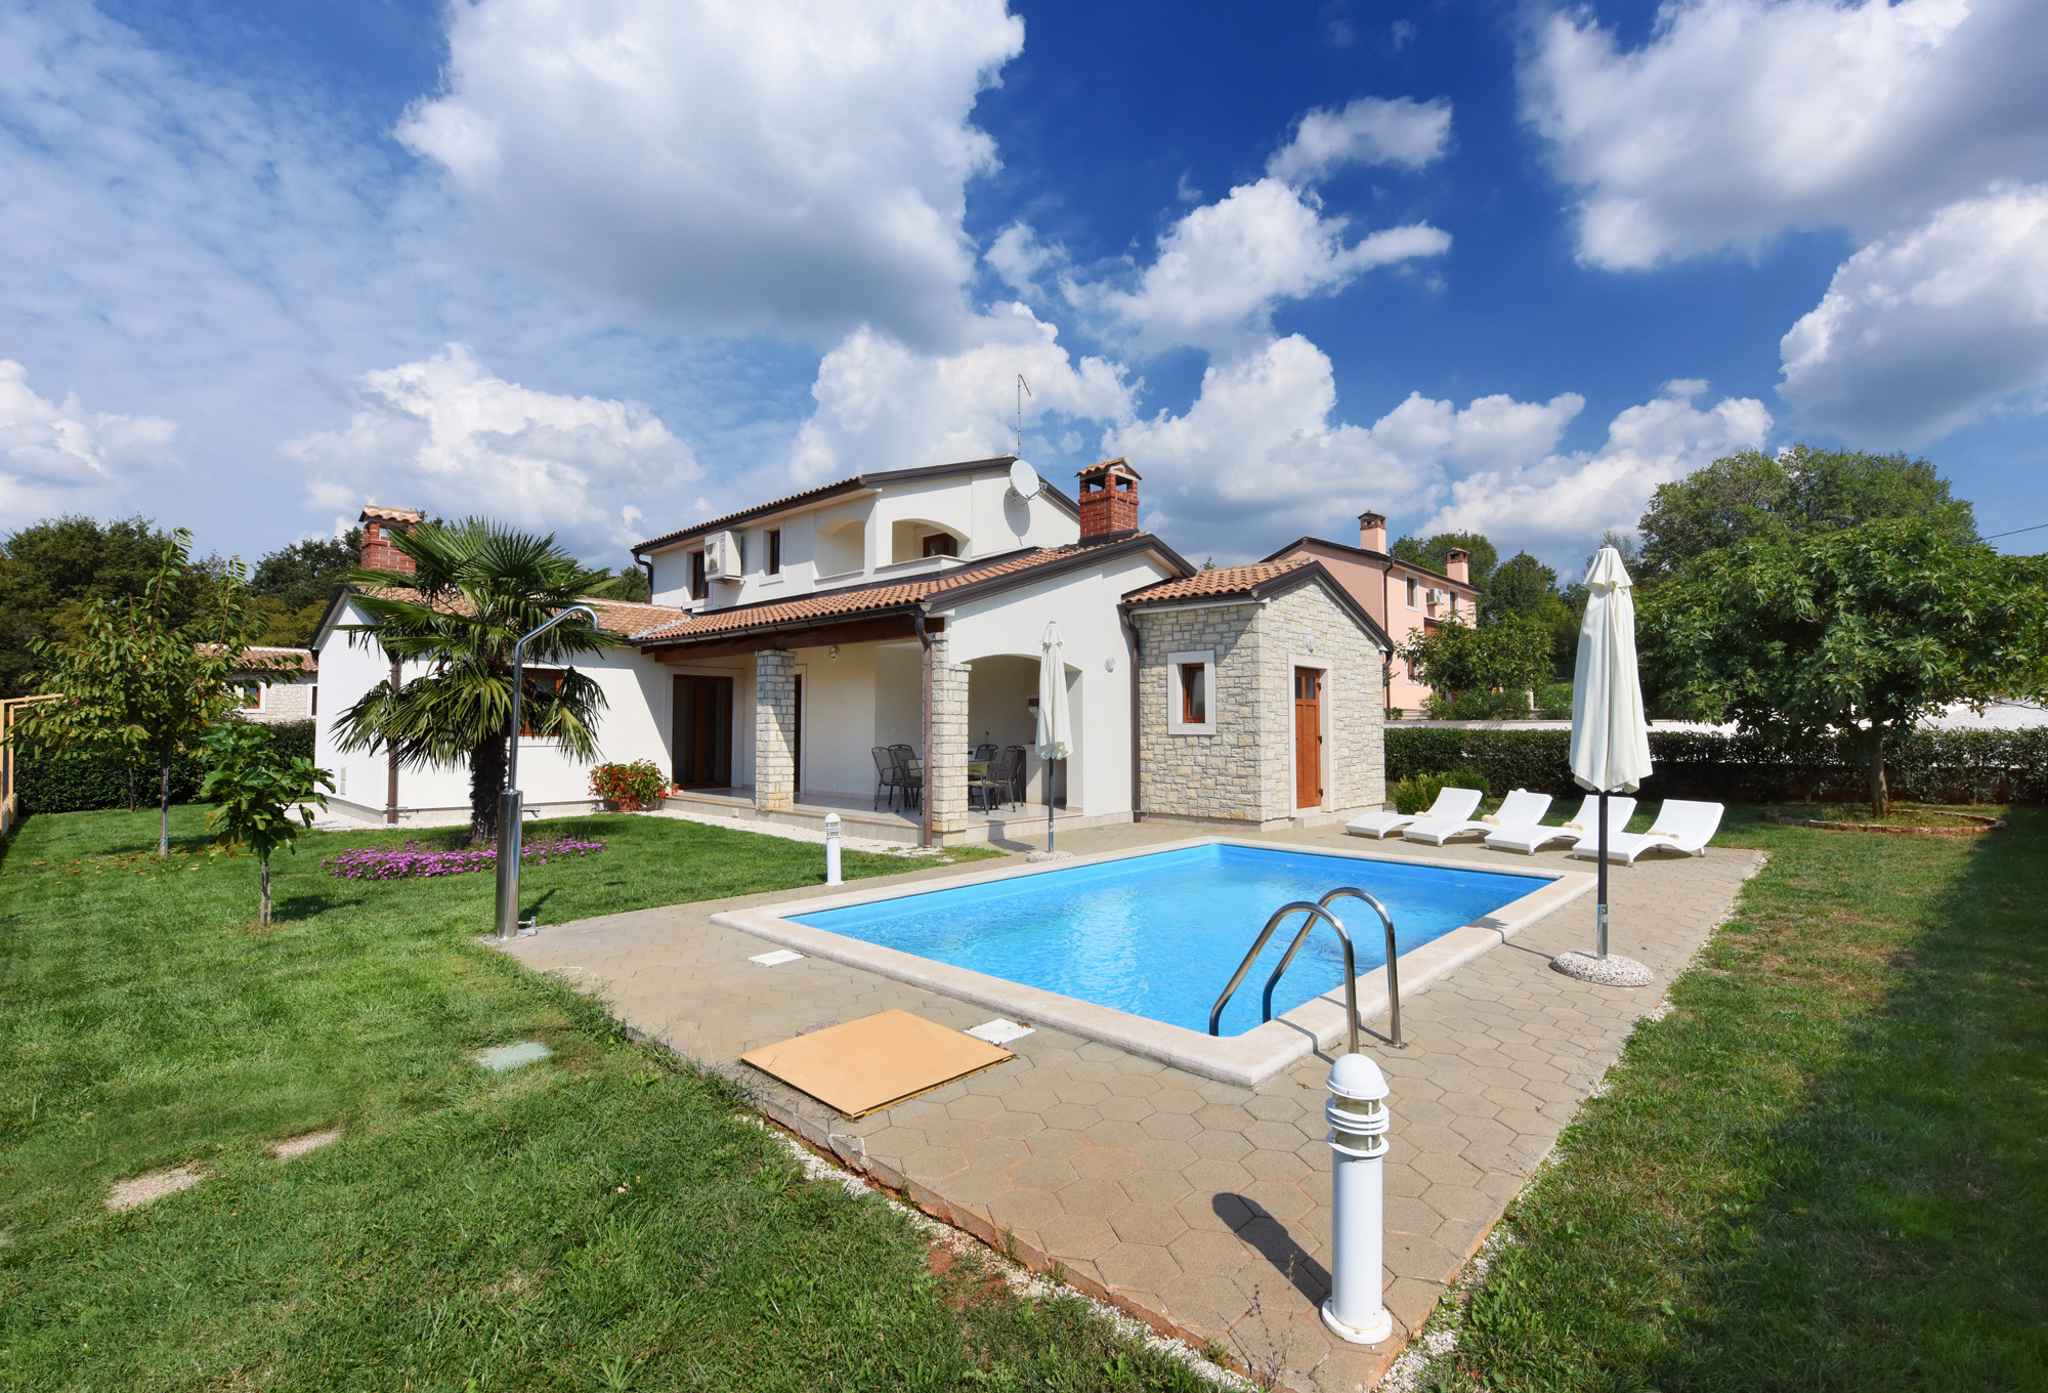 Villa mit Swimmingpool und Grillplatz Ferienhaus in Istrien